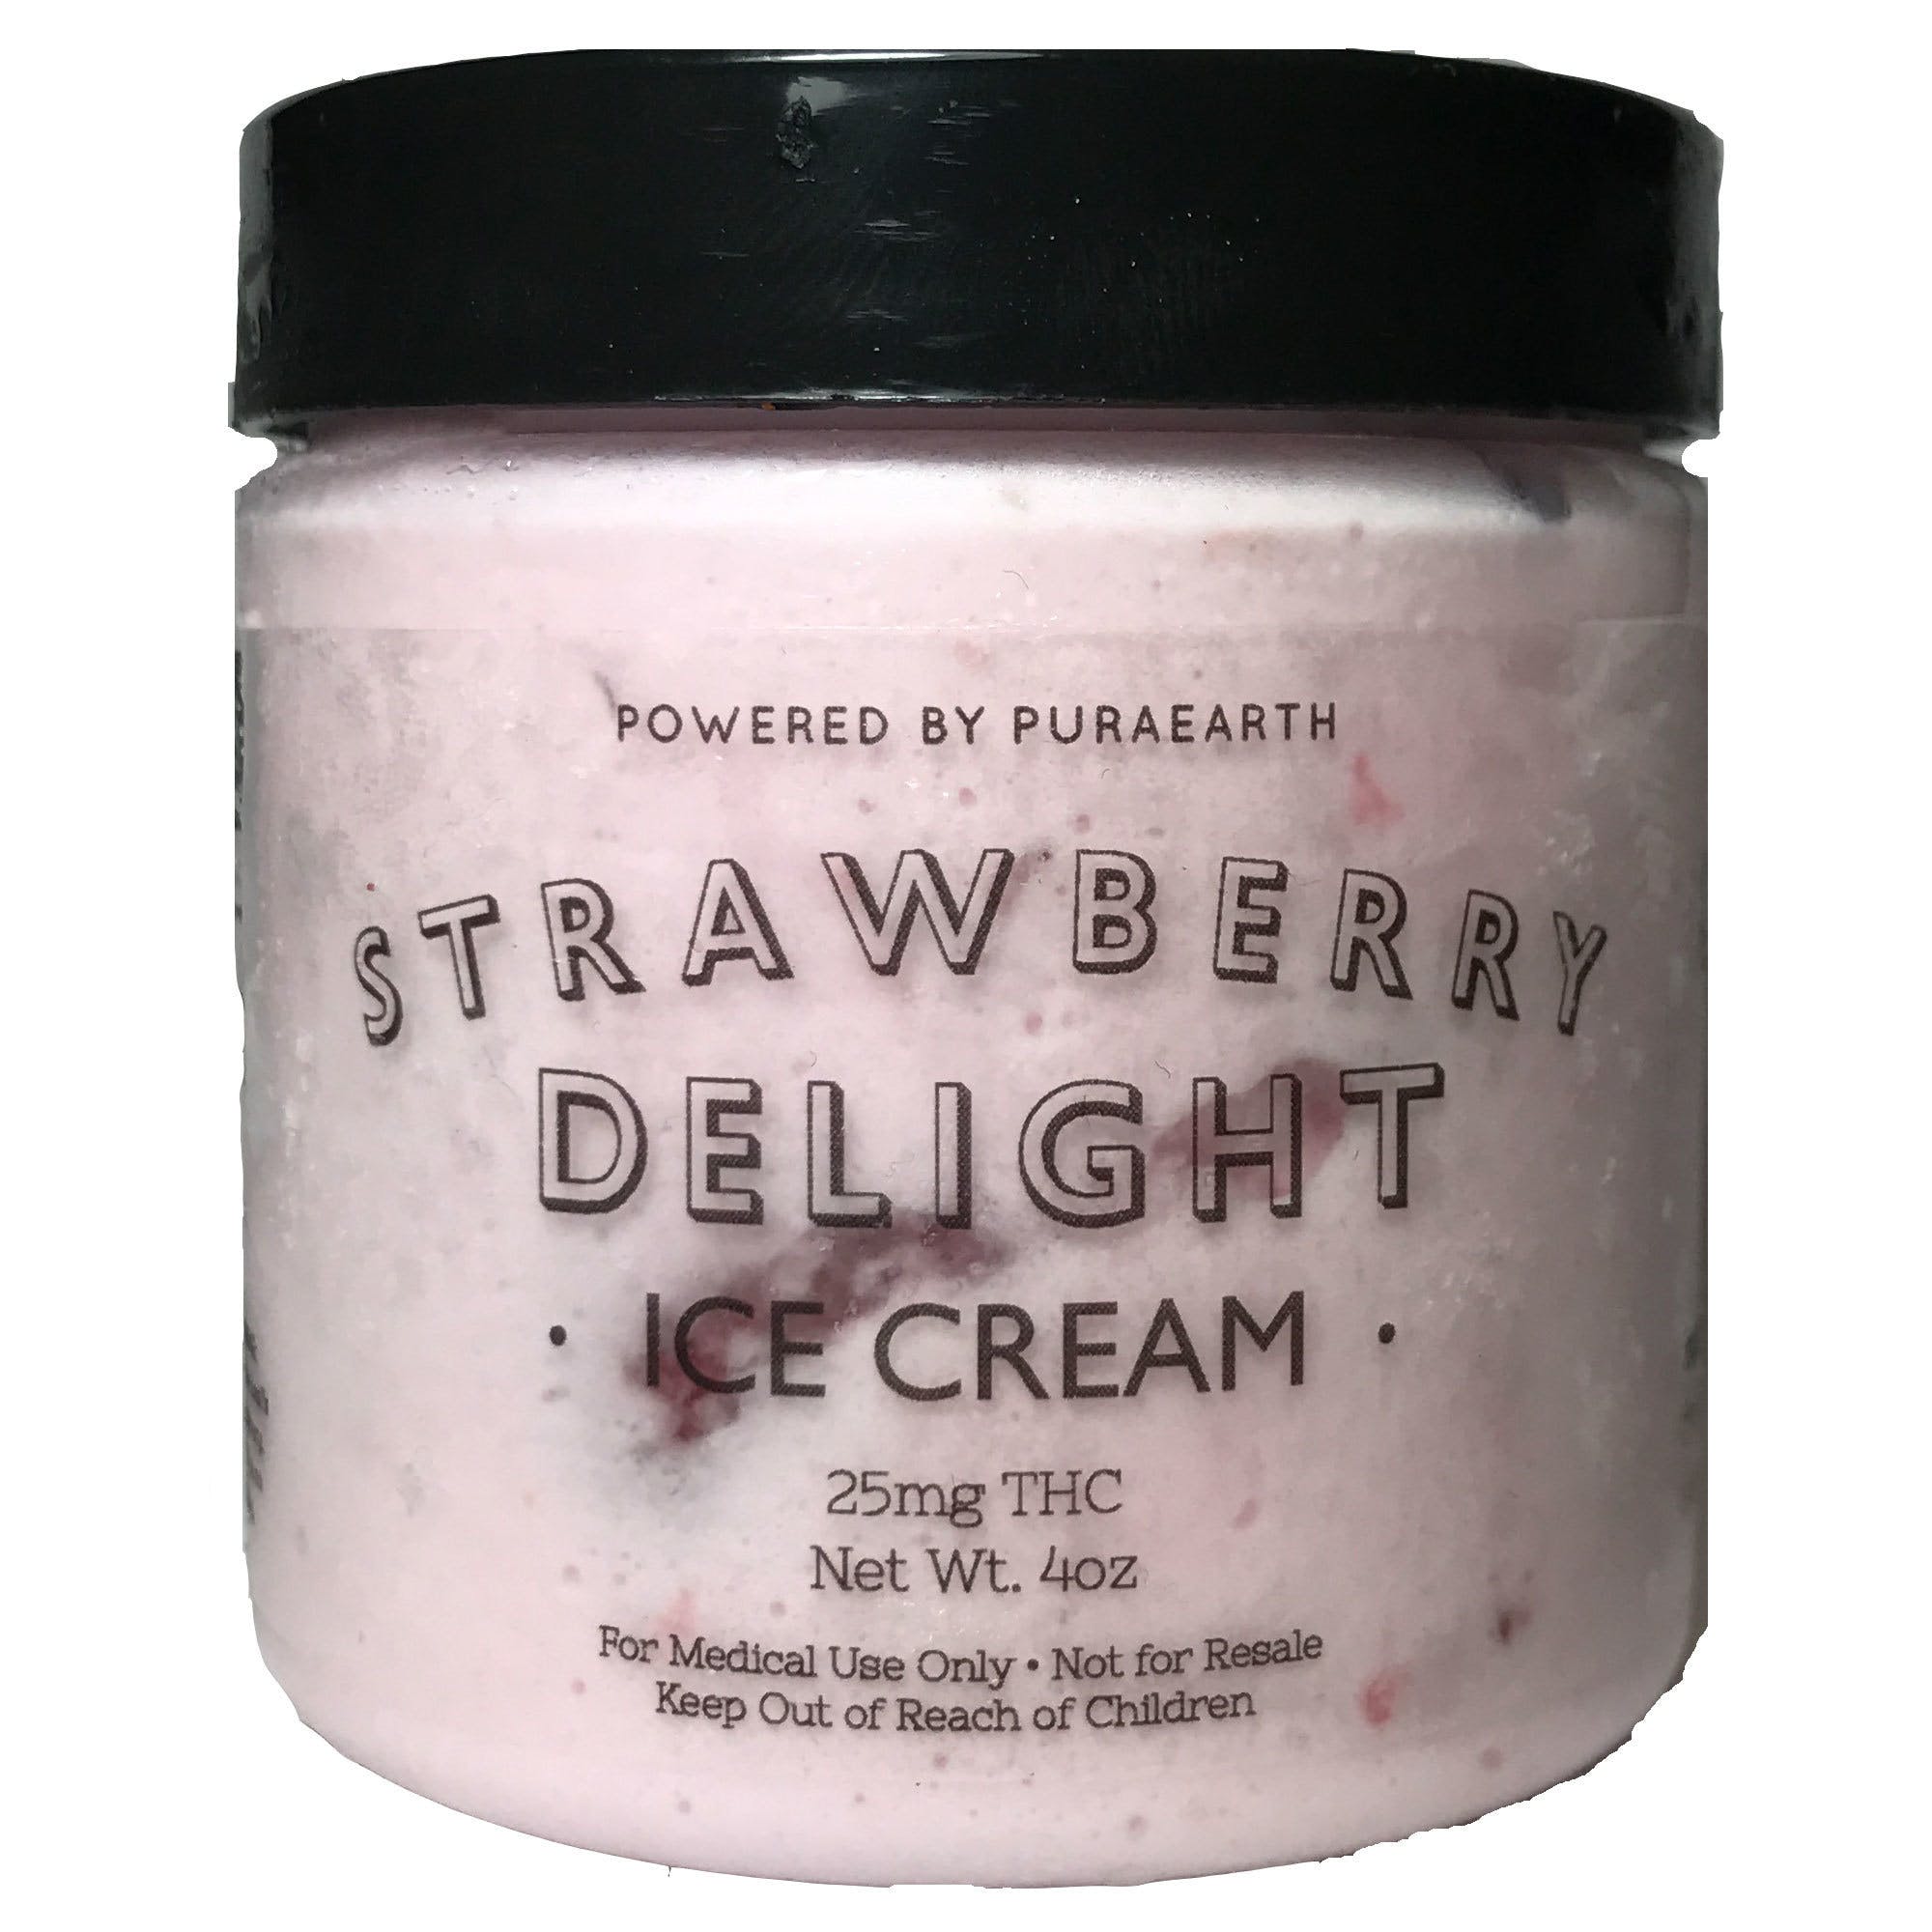 edible-cream-boutiques-strawberry-delight-ice-cream-150mg